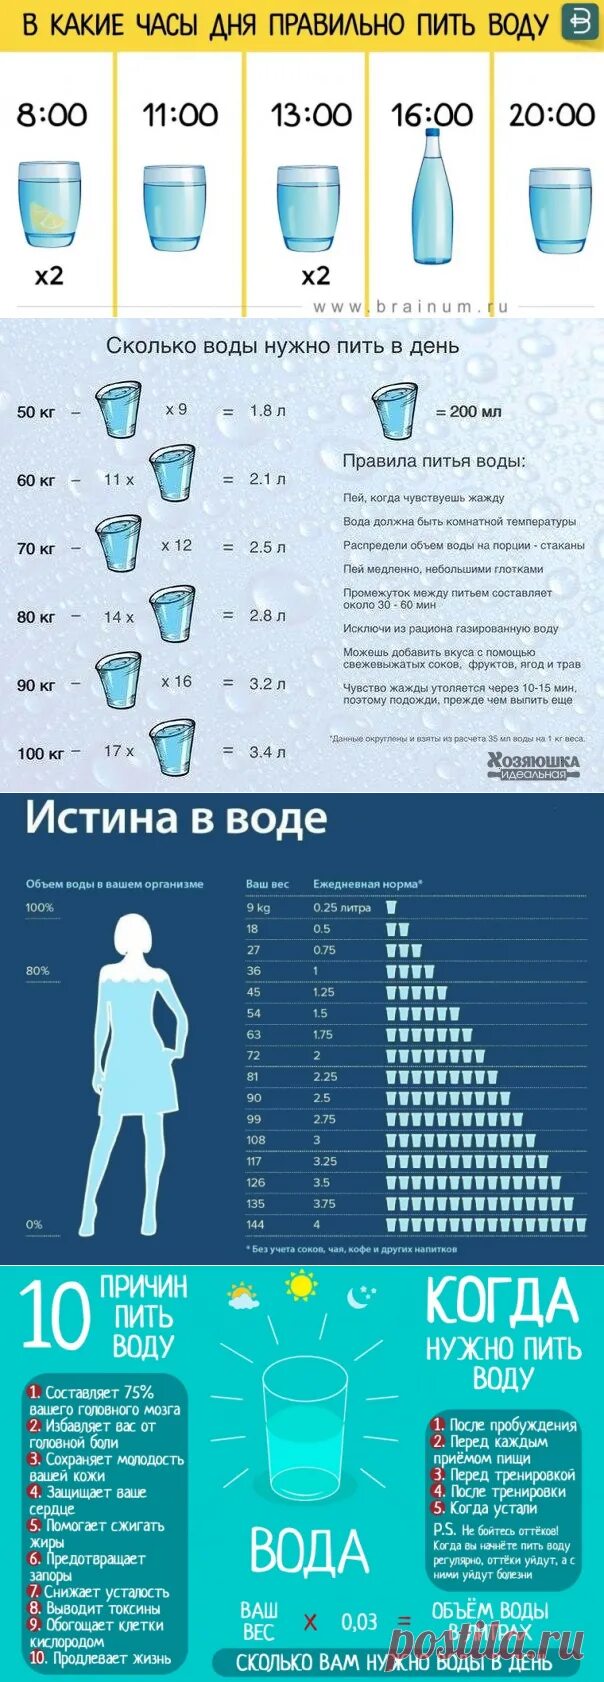 Как правильноаить воду. График правильного питья воды. Как правильно пить воду. Какипрааилтно пить воду.